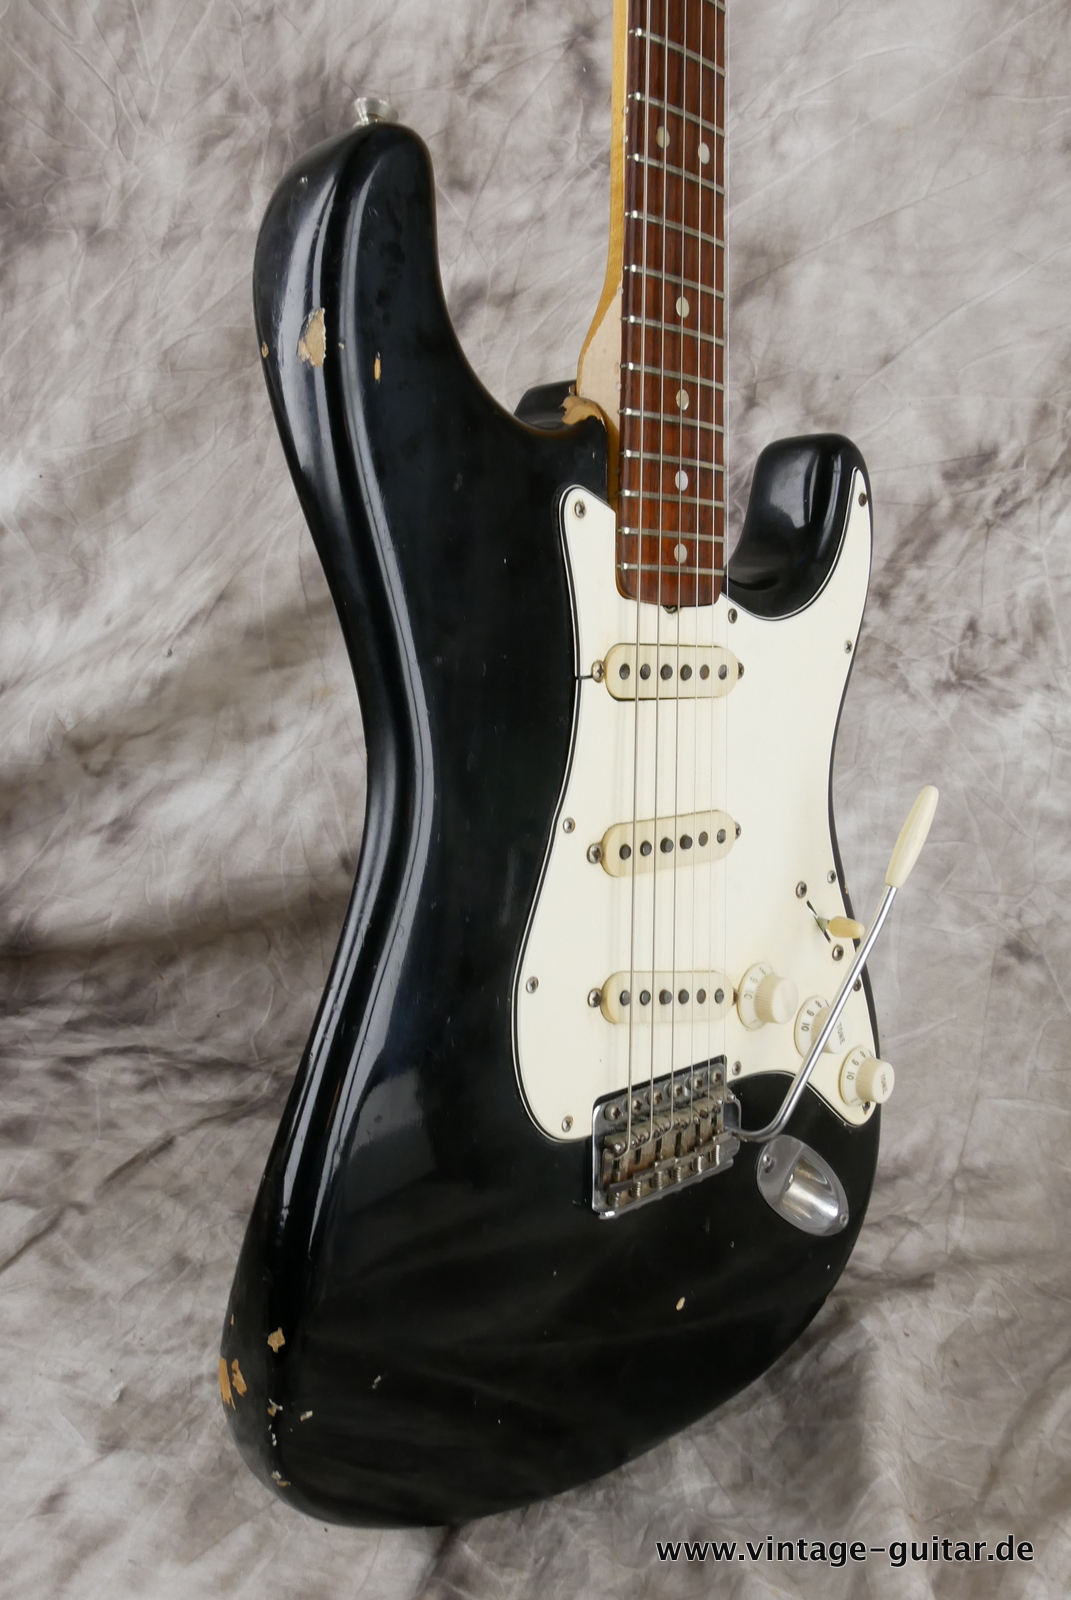 Fender-stratocaster-1969-black-012.JPG